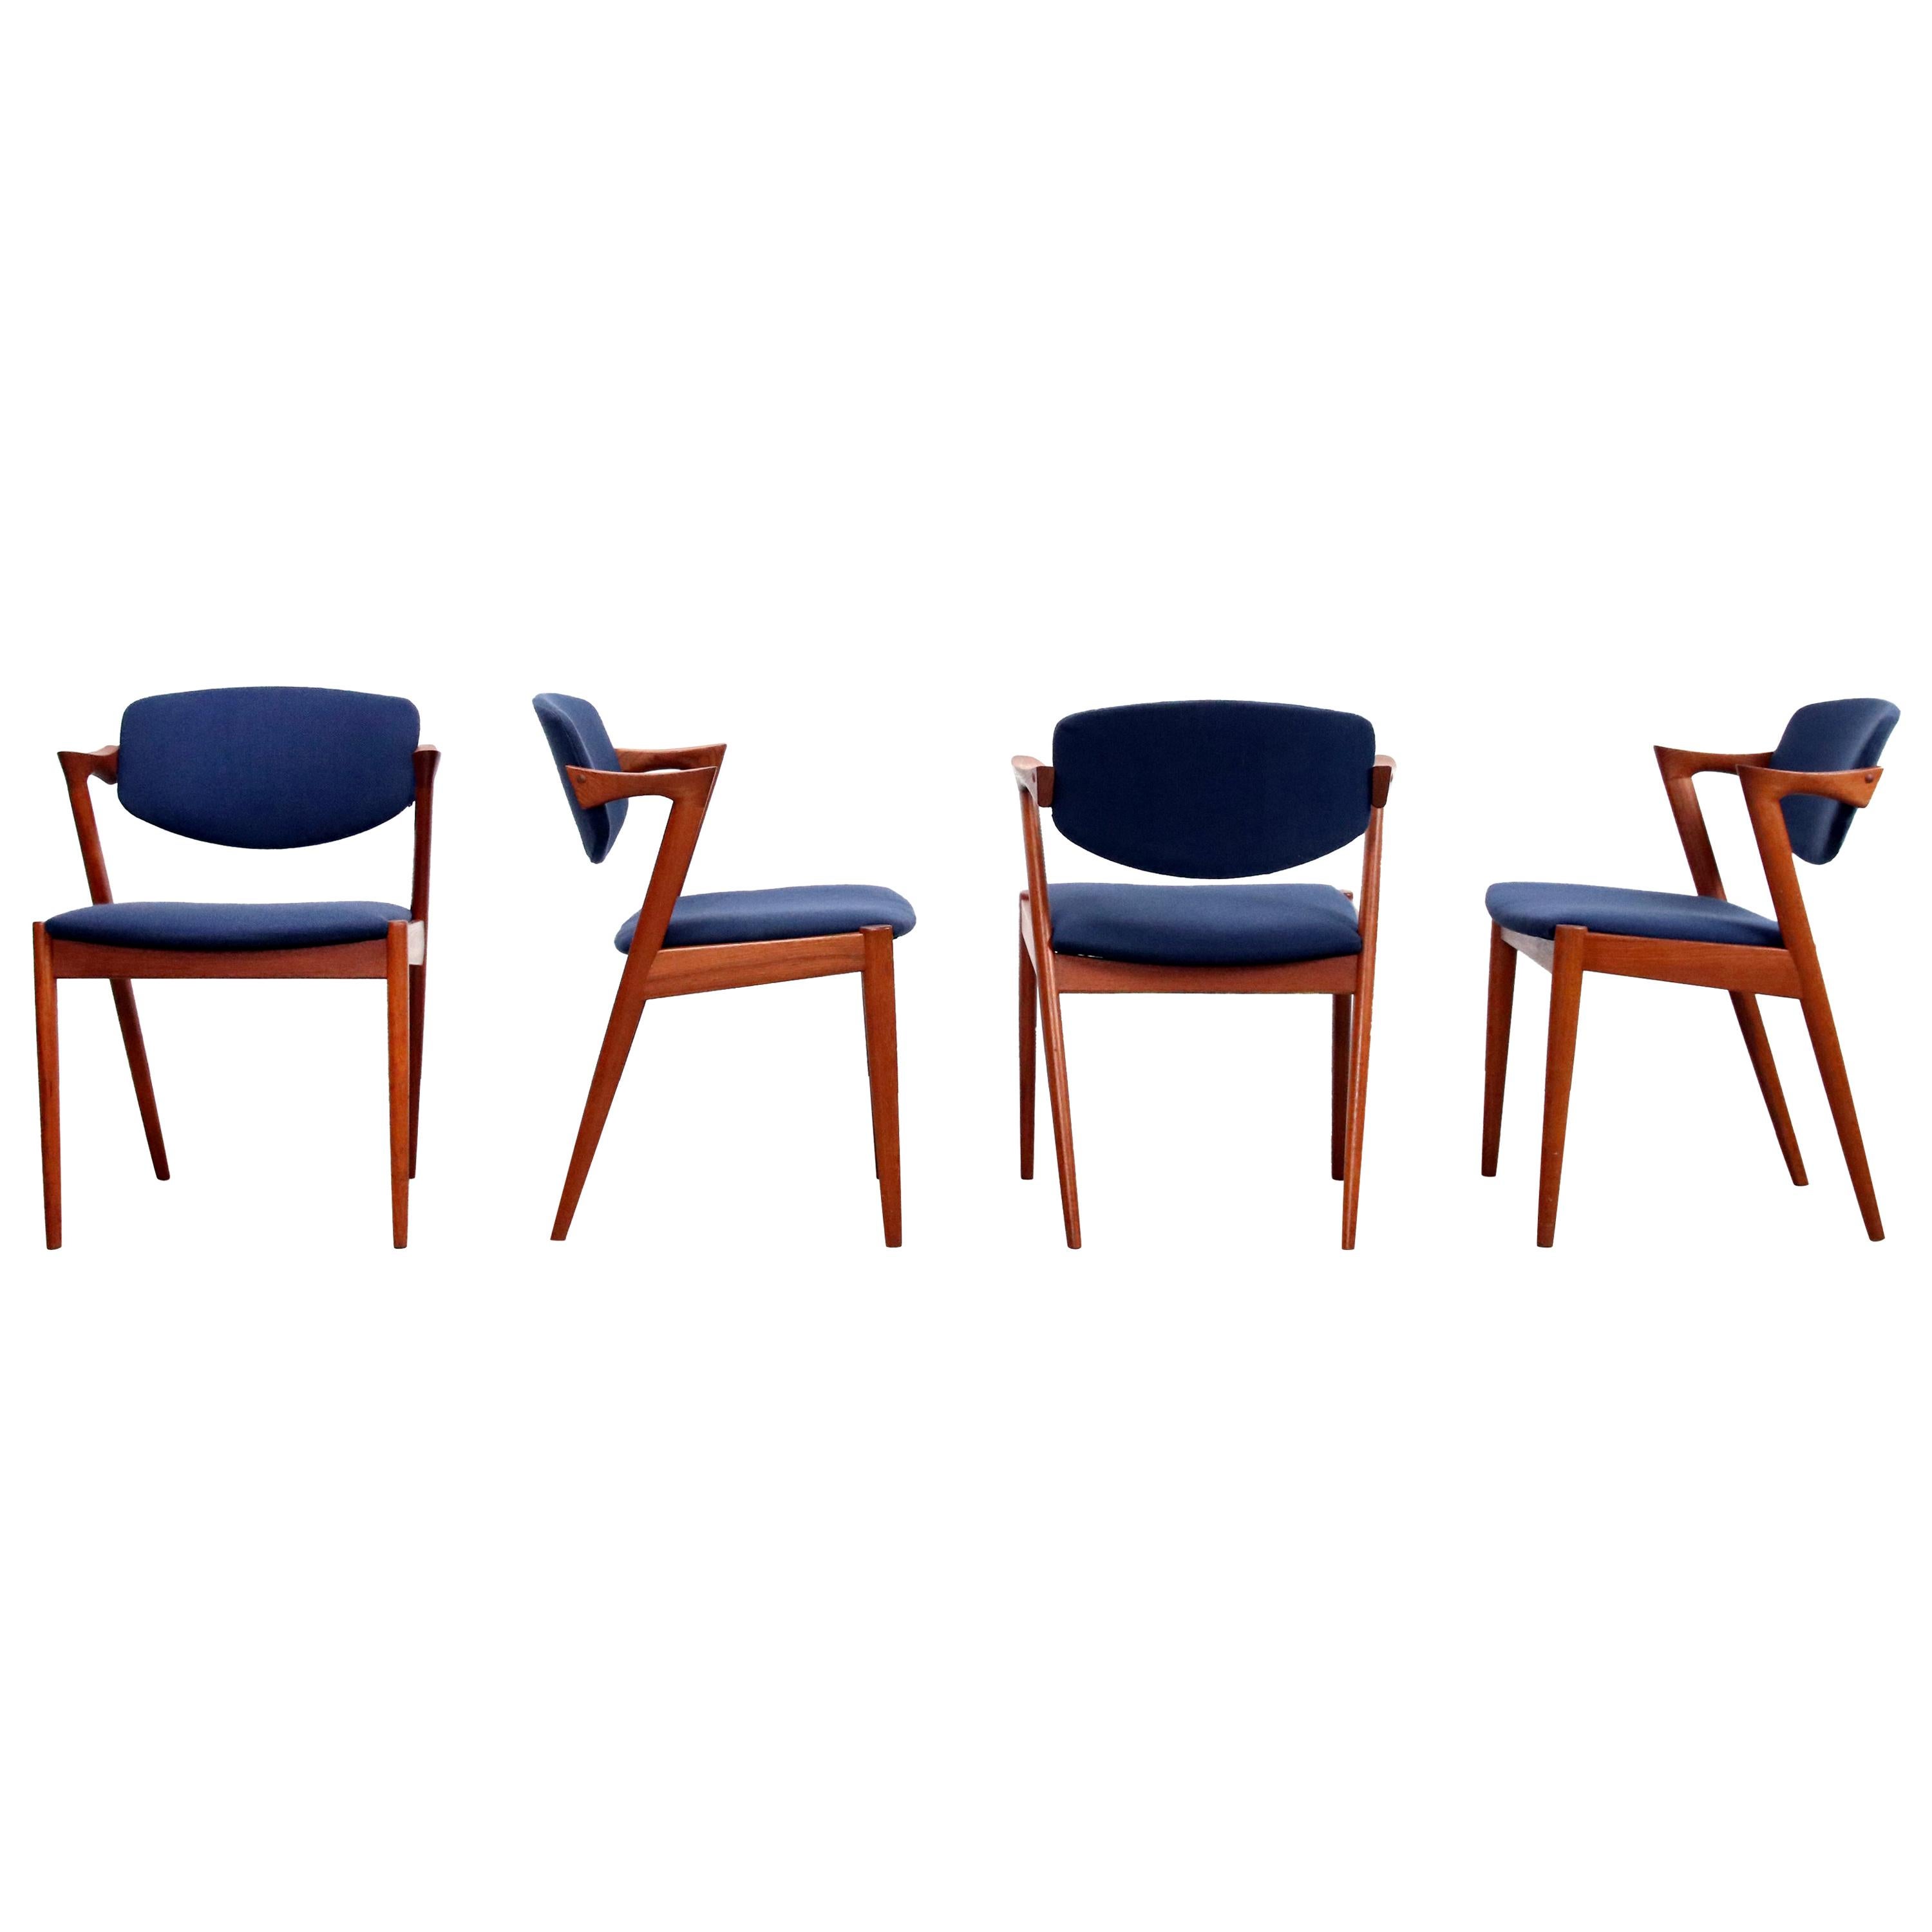 Set of 4 Teak Model 42 Dining Chairs by Kai Kristiansen for Andersen, Denmark